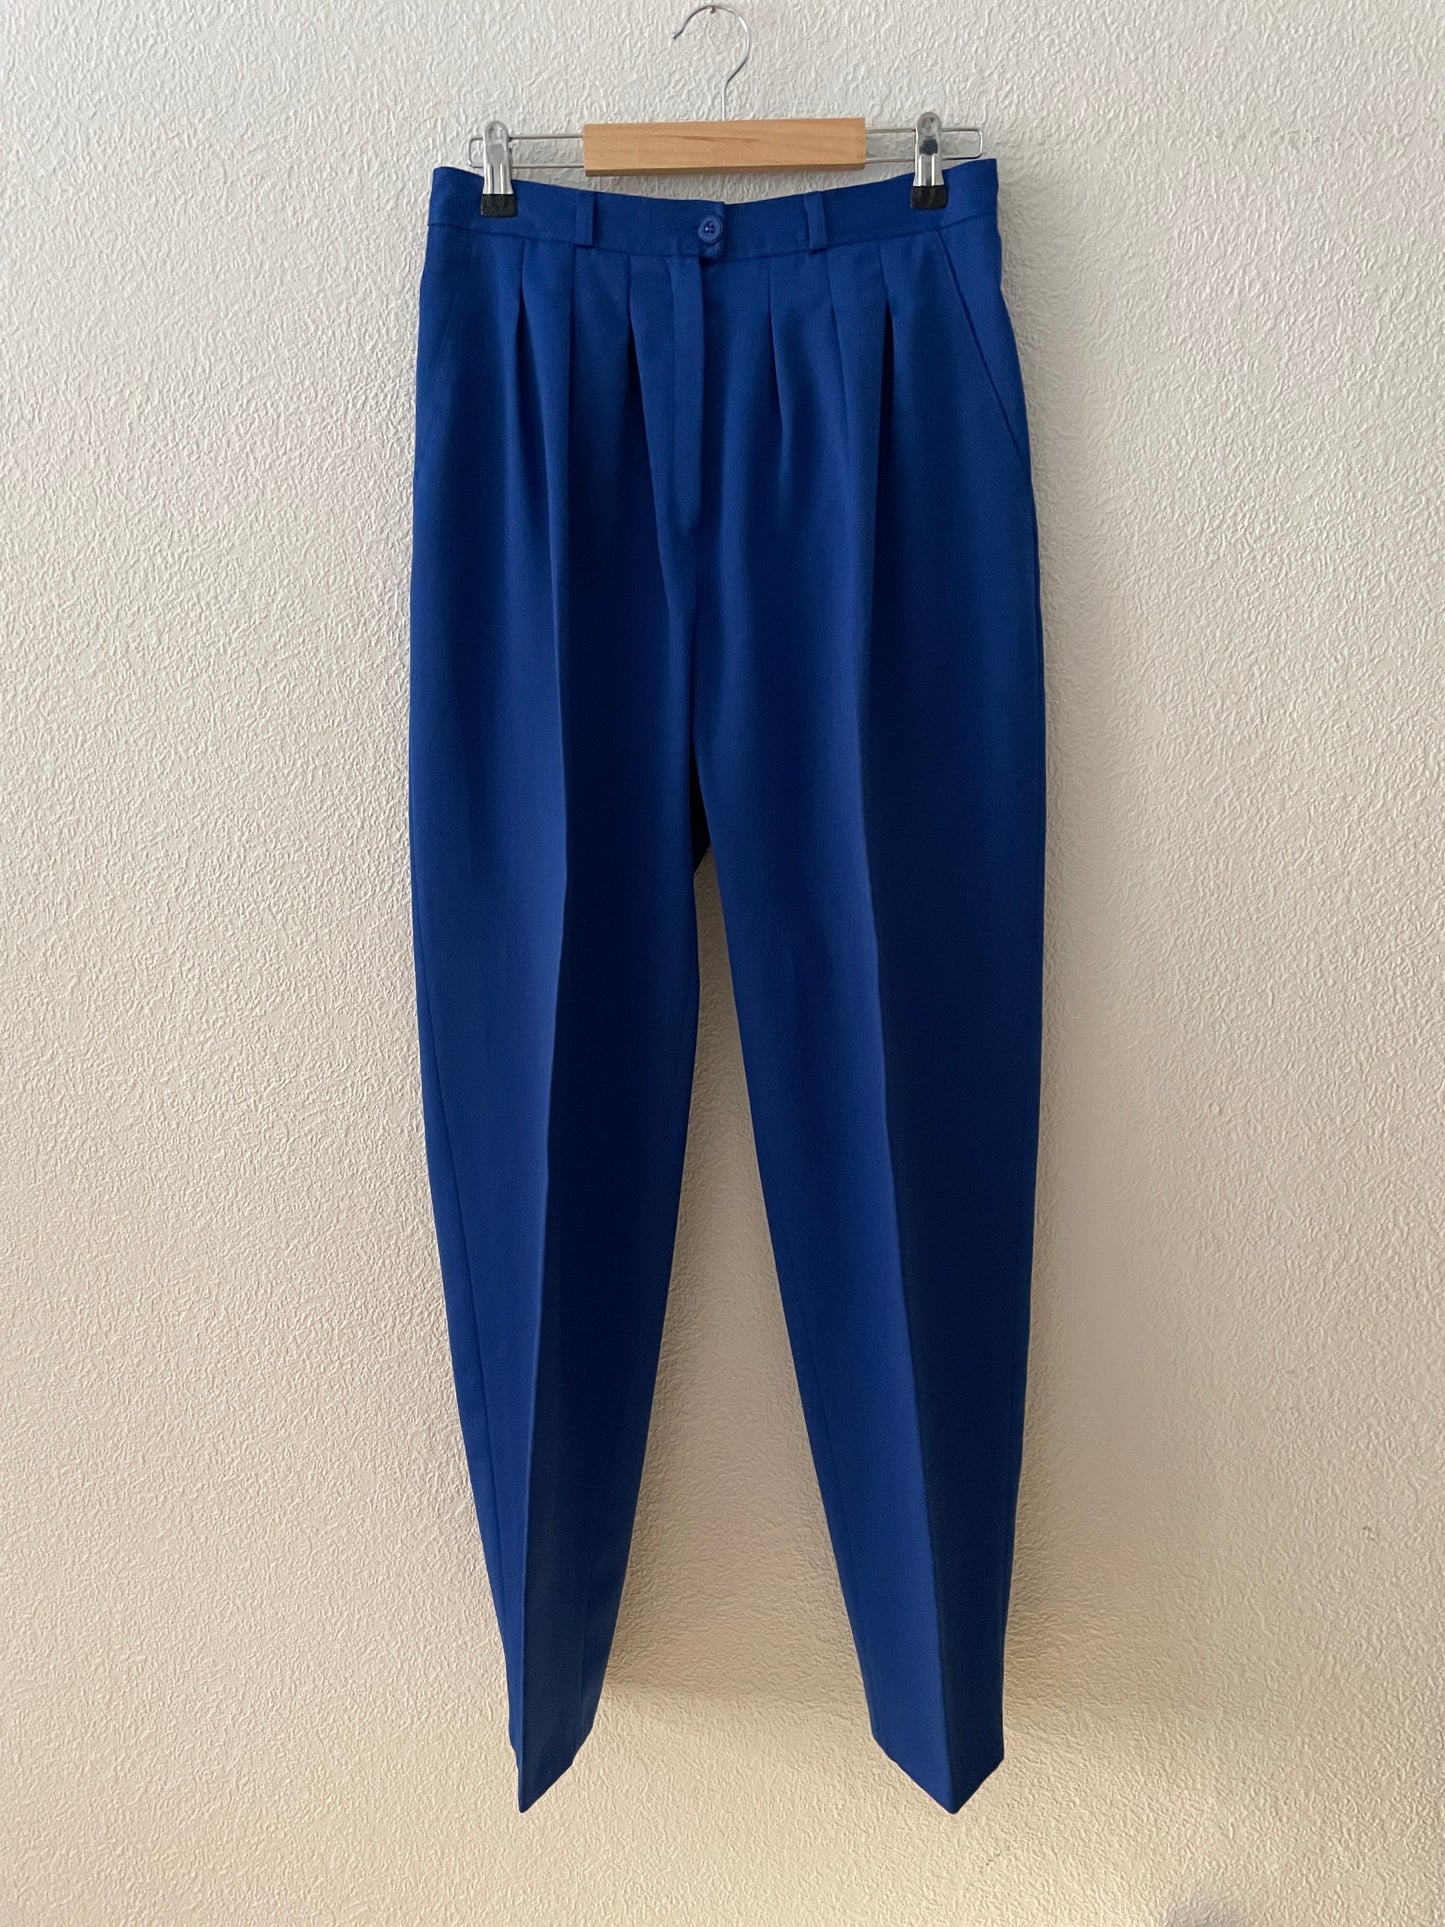 Cobalt Blue Wool Blend Trousers